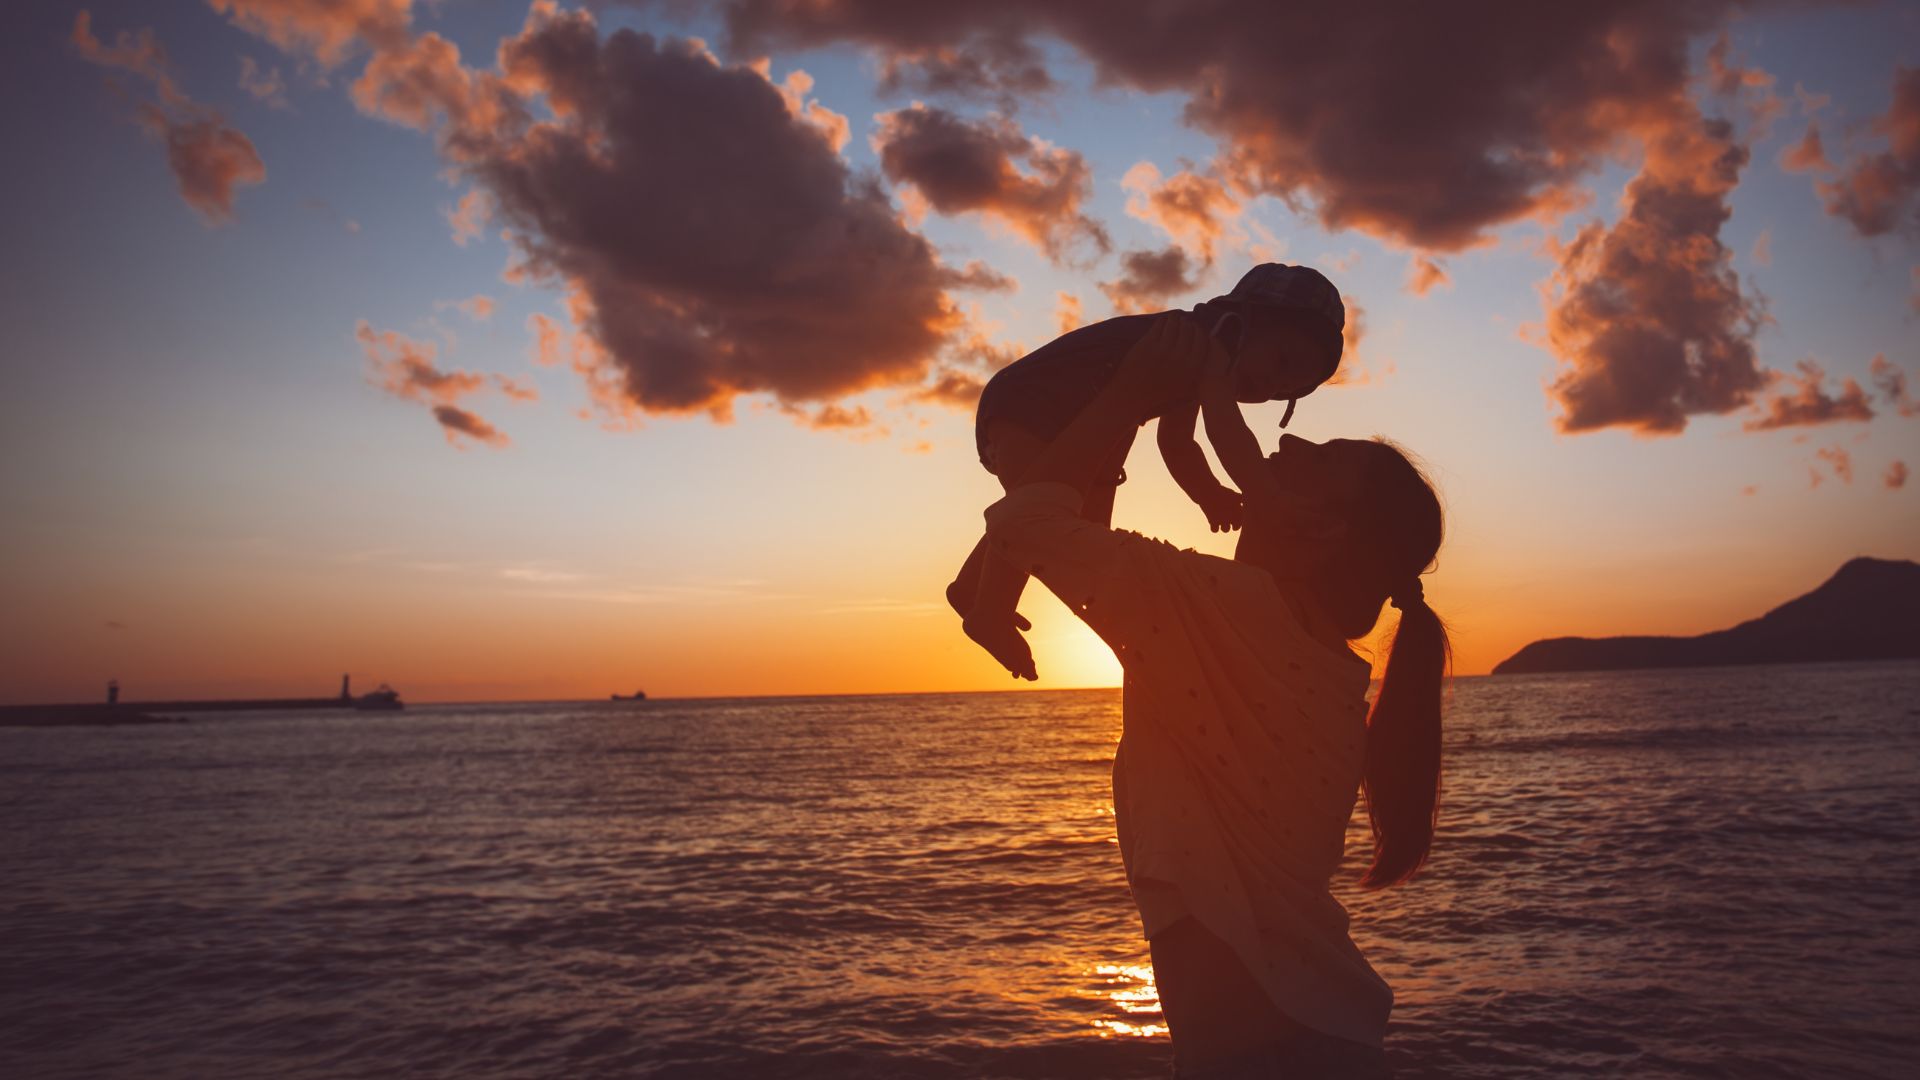 Imagem do mar e ao fundo o pôr do Sol. Em destaque, a mãe segurando no colo o seu filho.